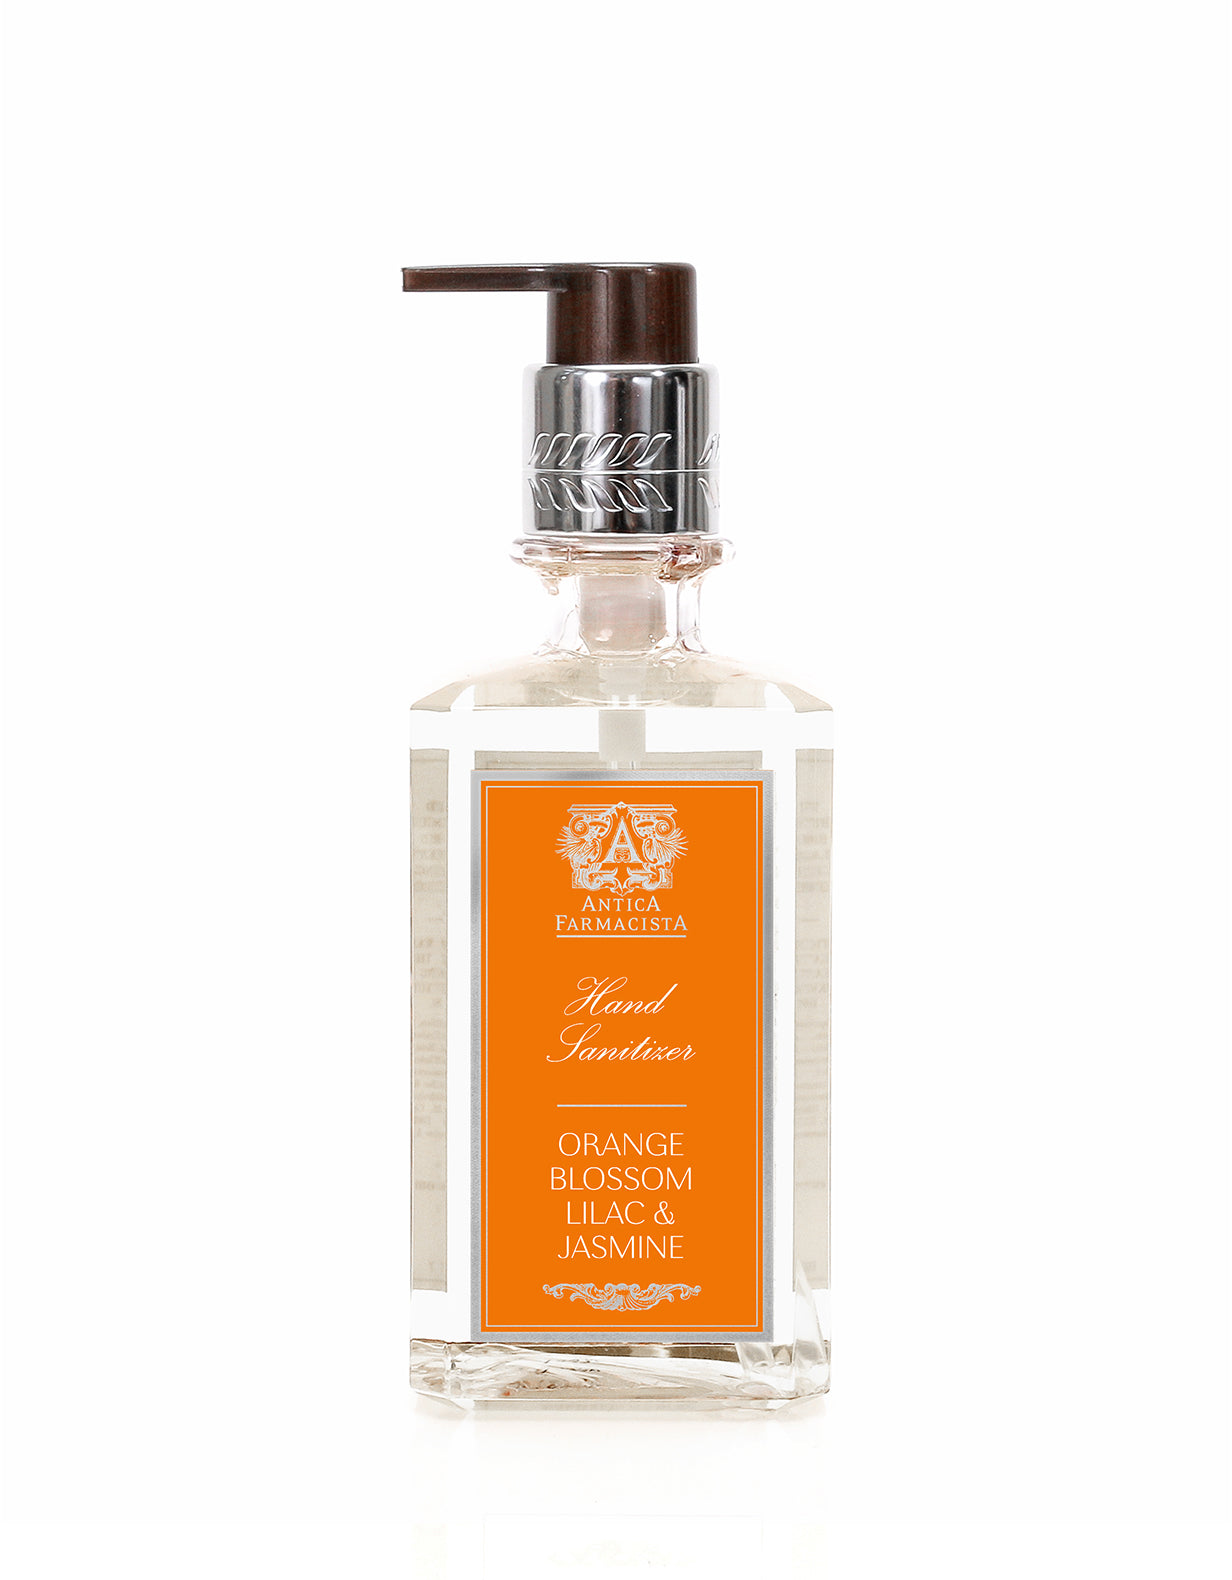 Orange Blossom, Lilac & Jasmine Hand Sanitizer